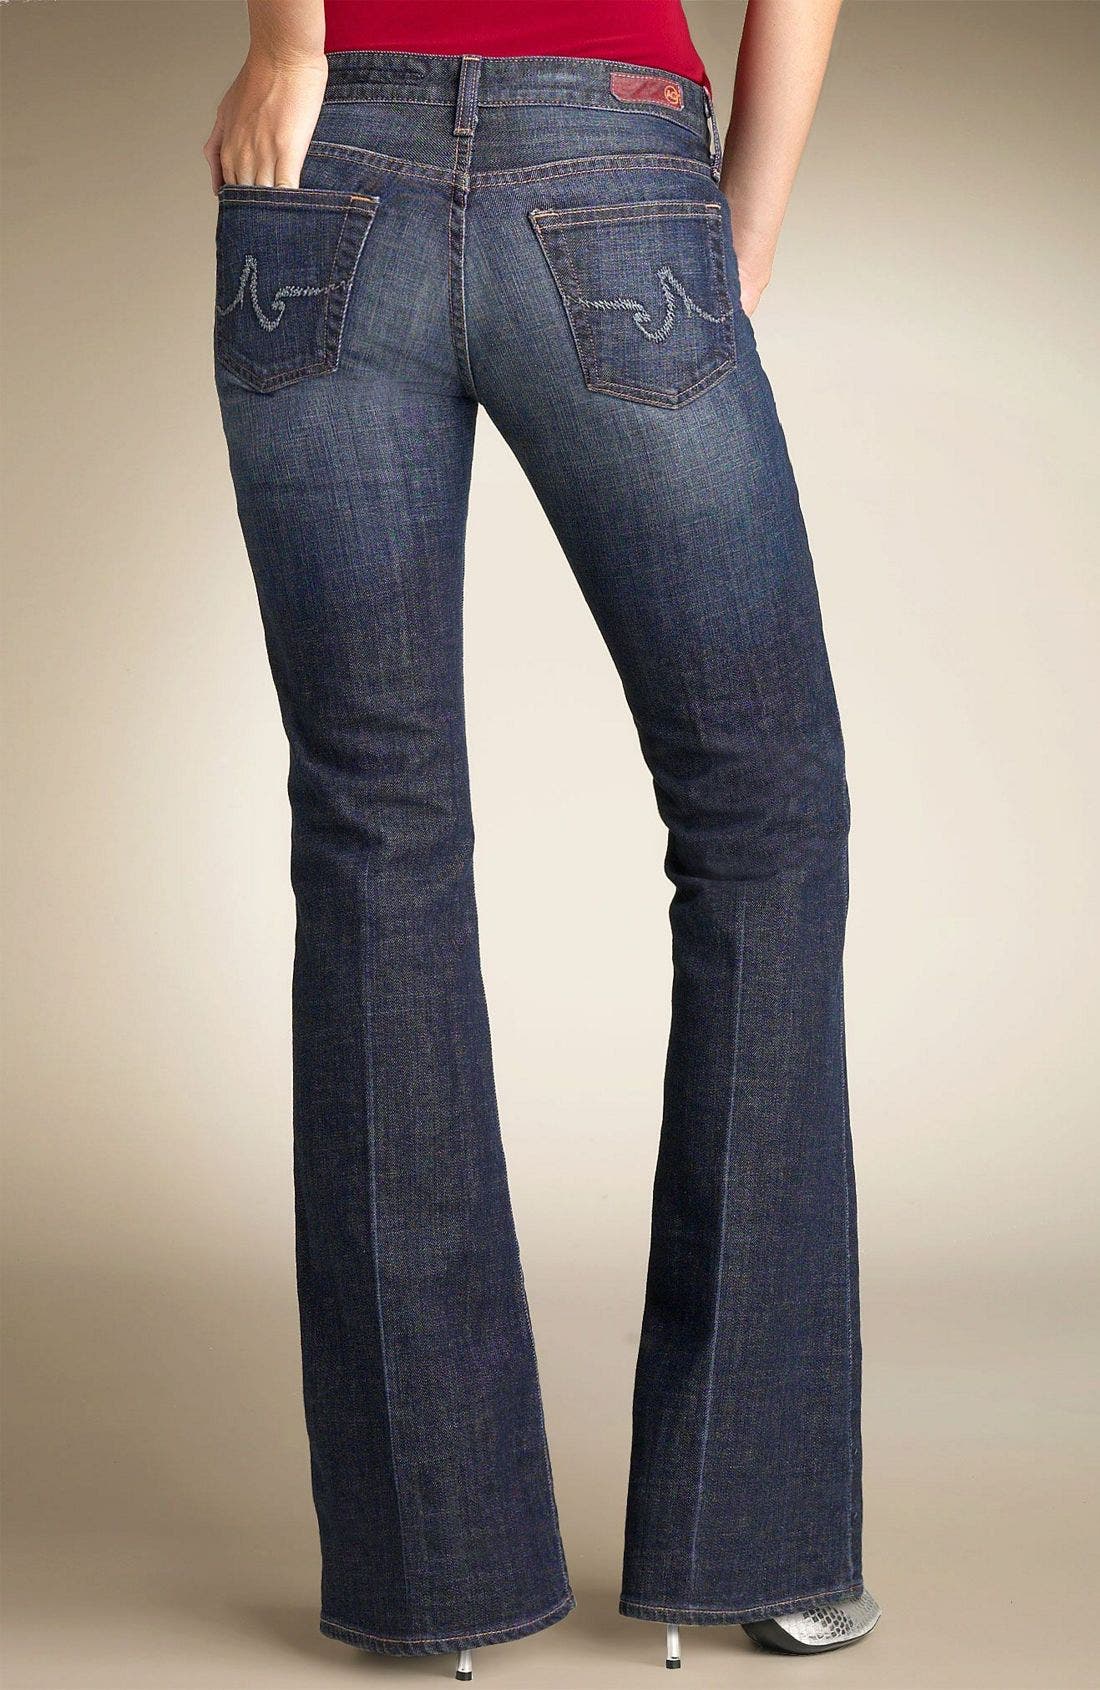 vintage slim ankle jeans